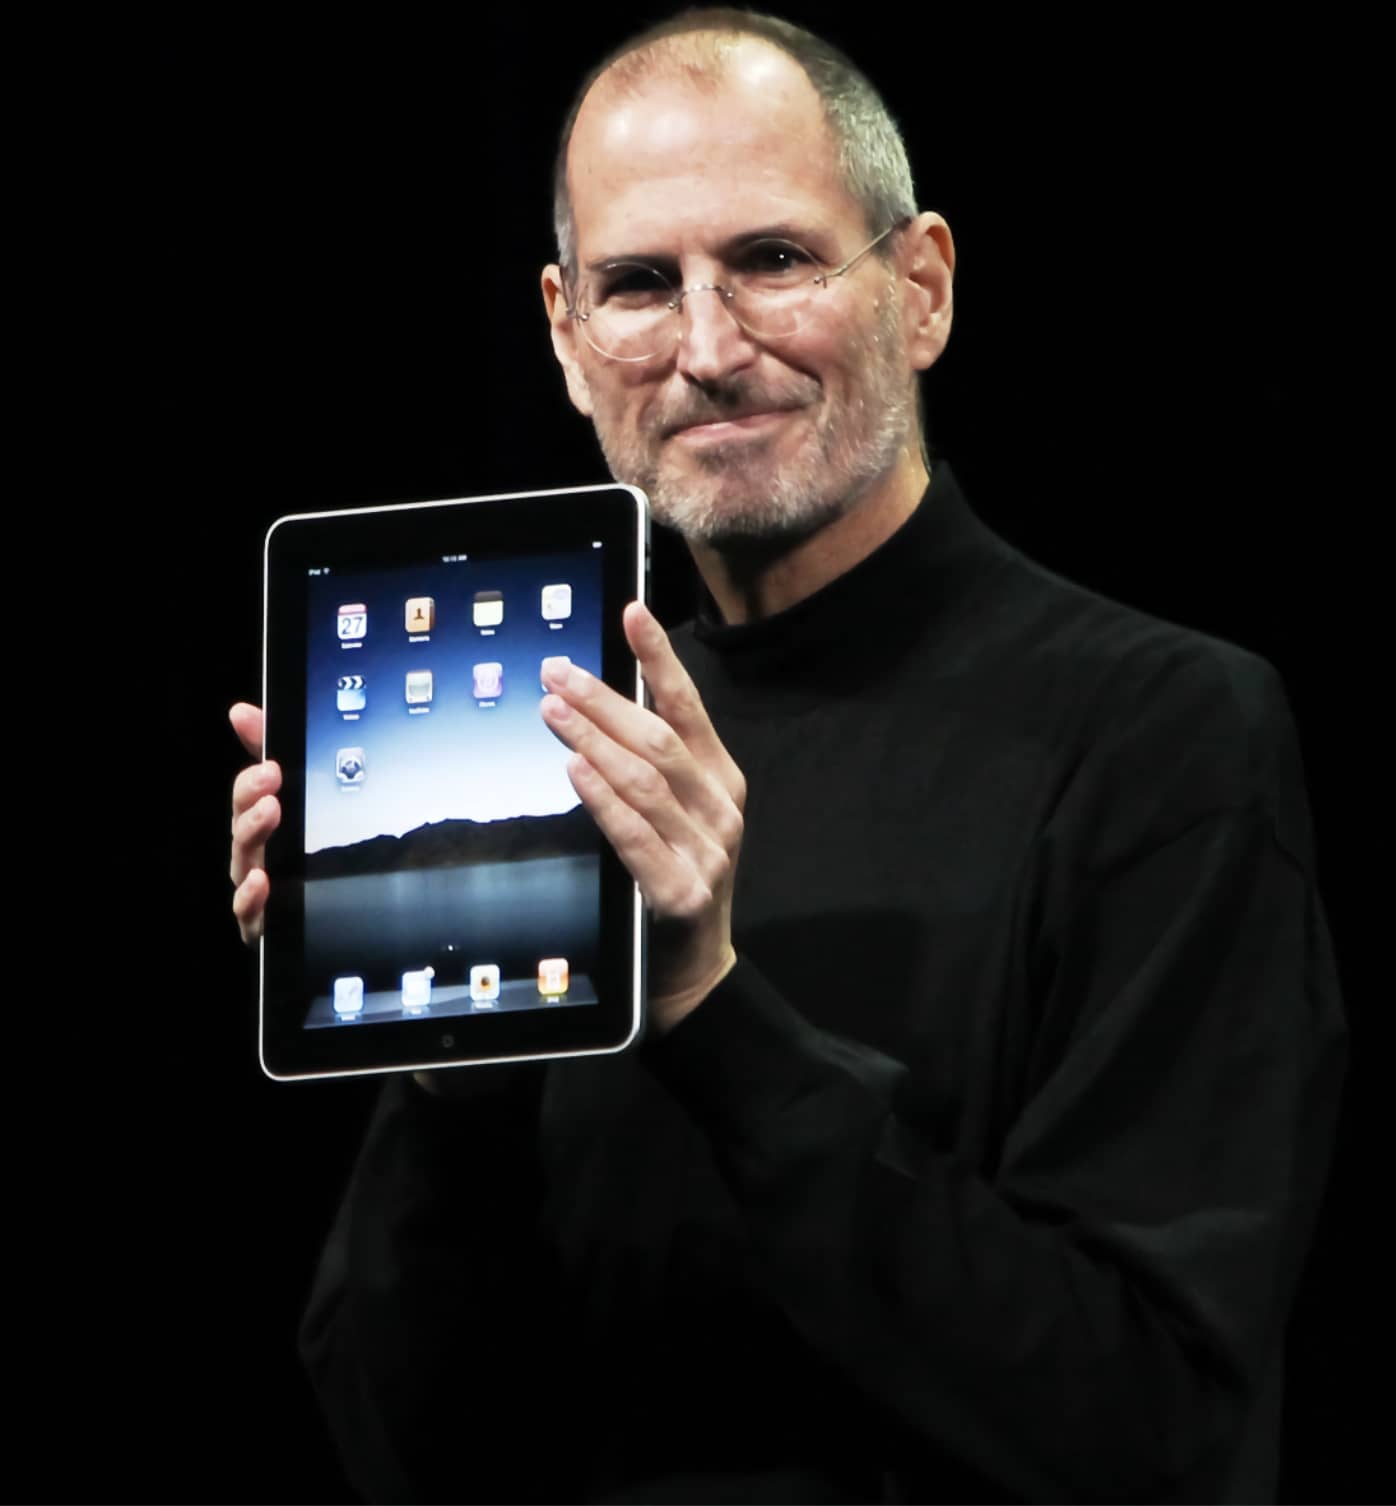 Ejemplo de marketing experiencial: Steve Jobs en un Keynote presentando el iPad